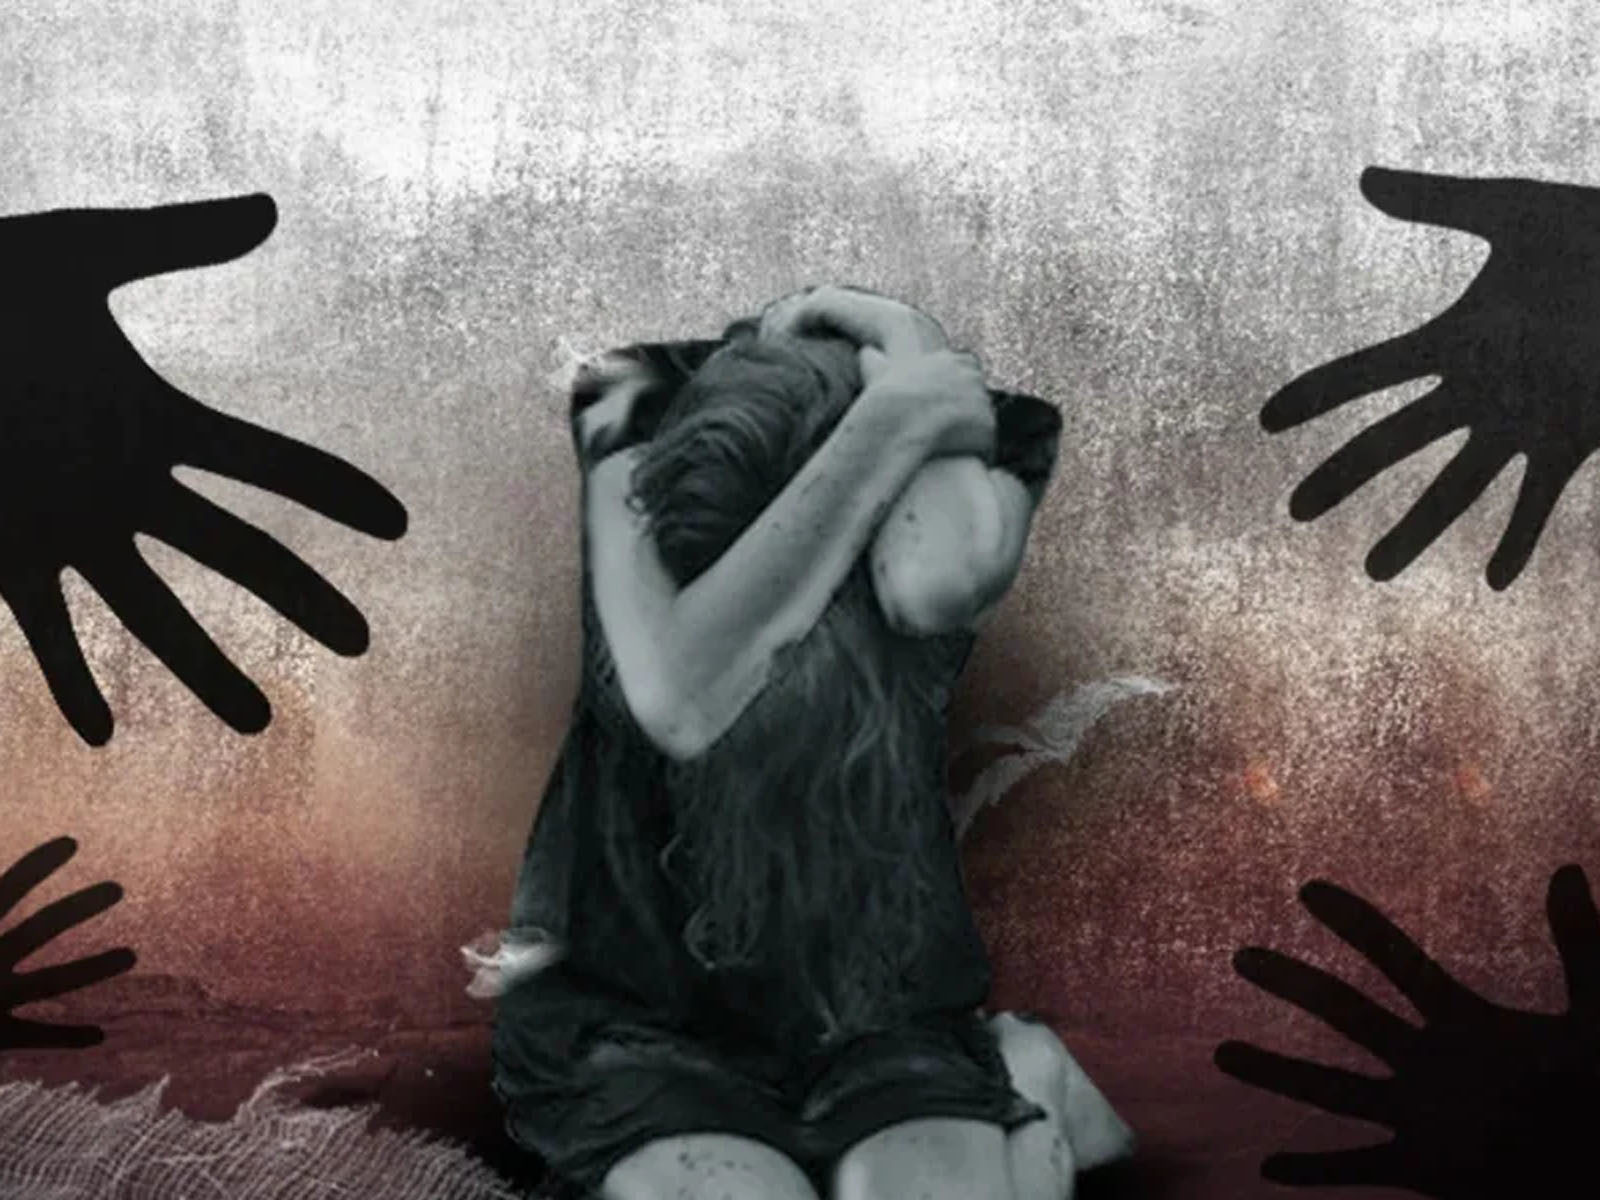 Girl raped after kidnapping in Safidon area nodbk - हरियाणा: अपहरण के बाद  युवती से रेप, गांव के ही युवक ने दिया वारदात को अंजाम – News18 हिंदी